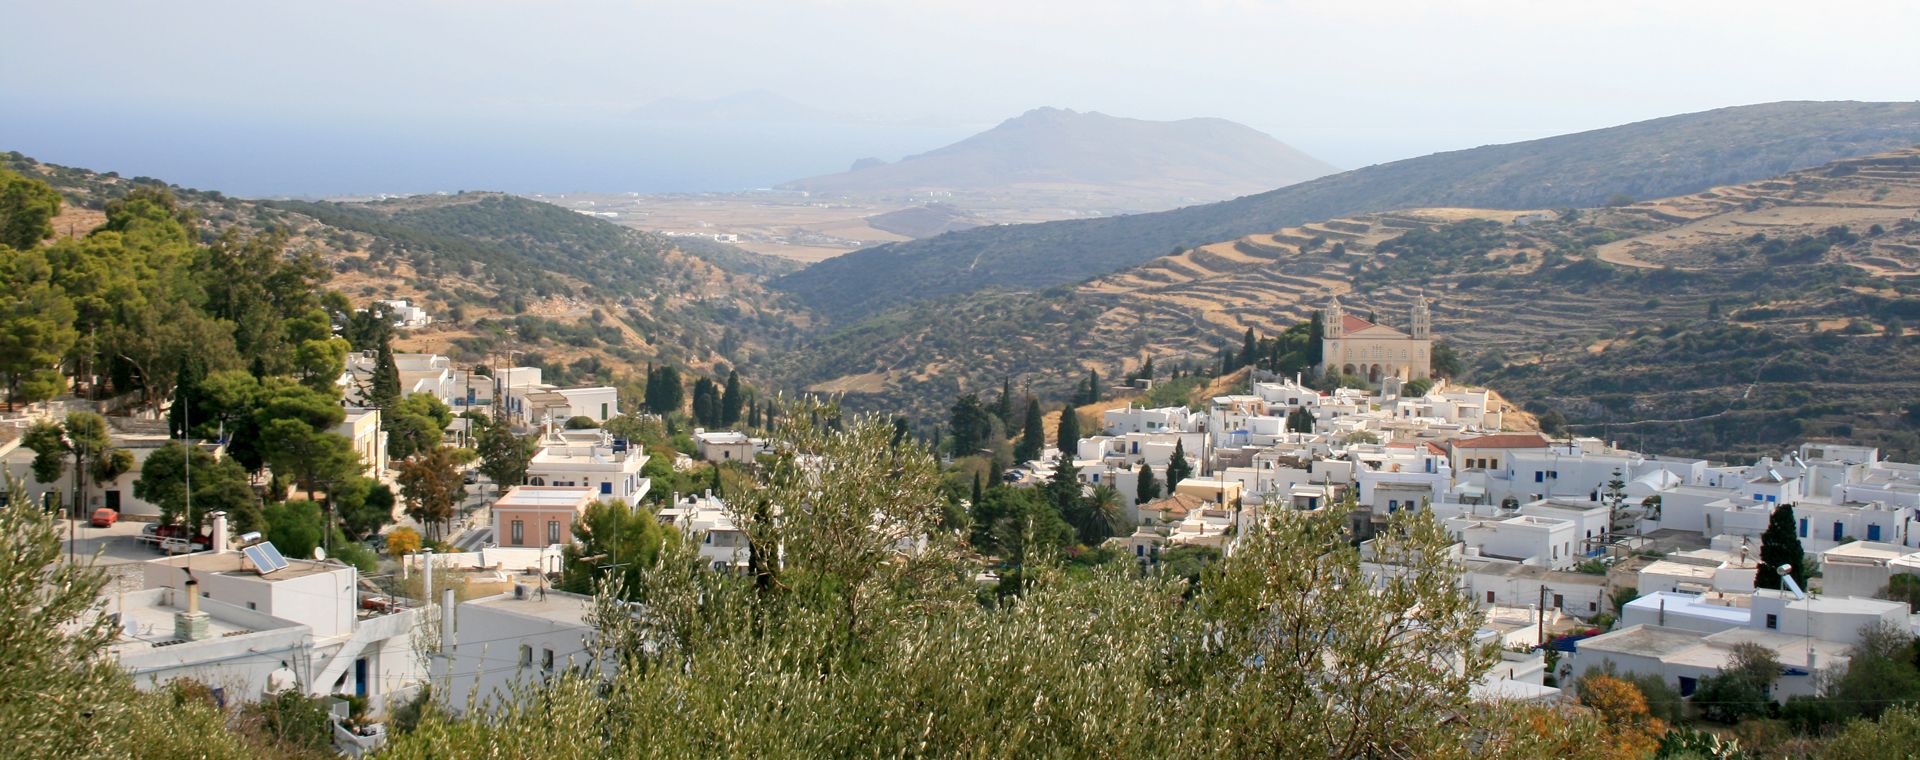 Village de Lefkés sur l'île de Paros